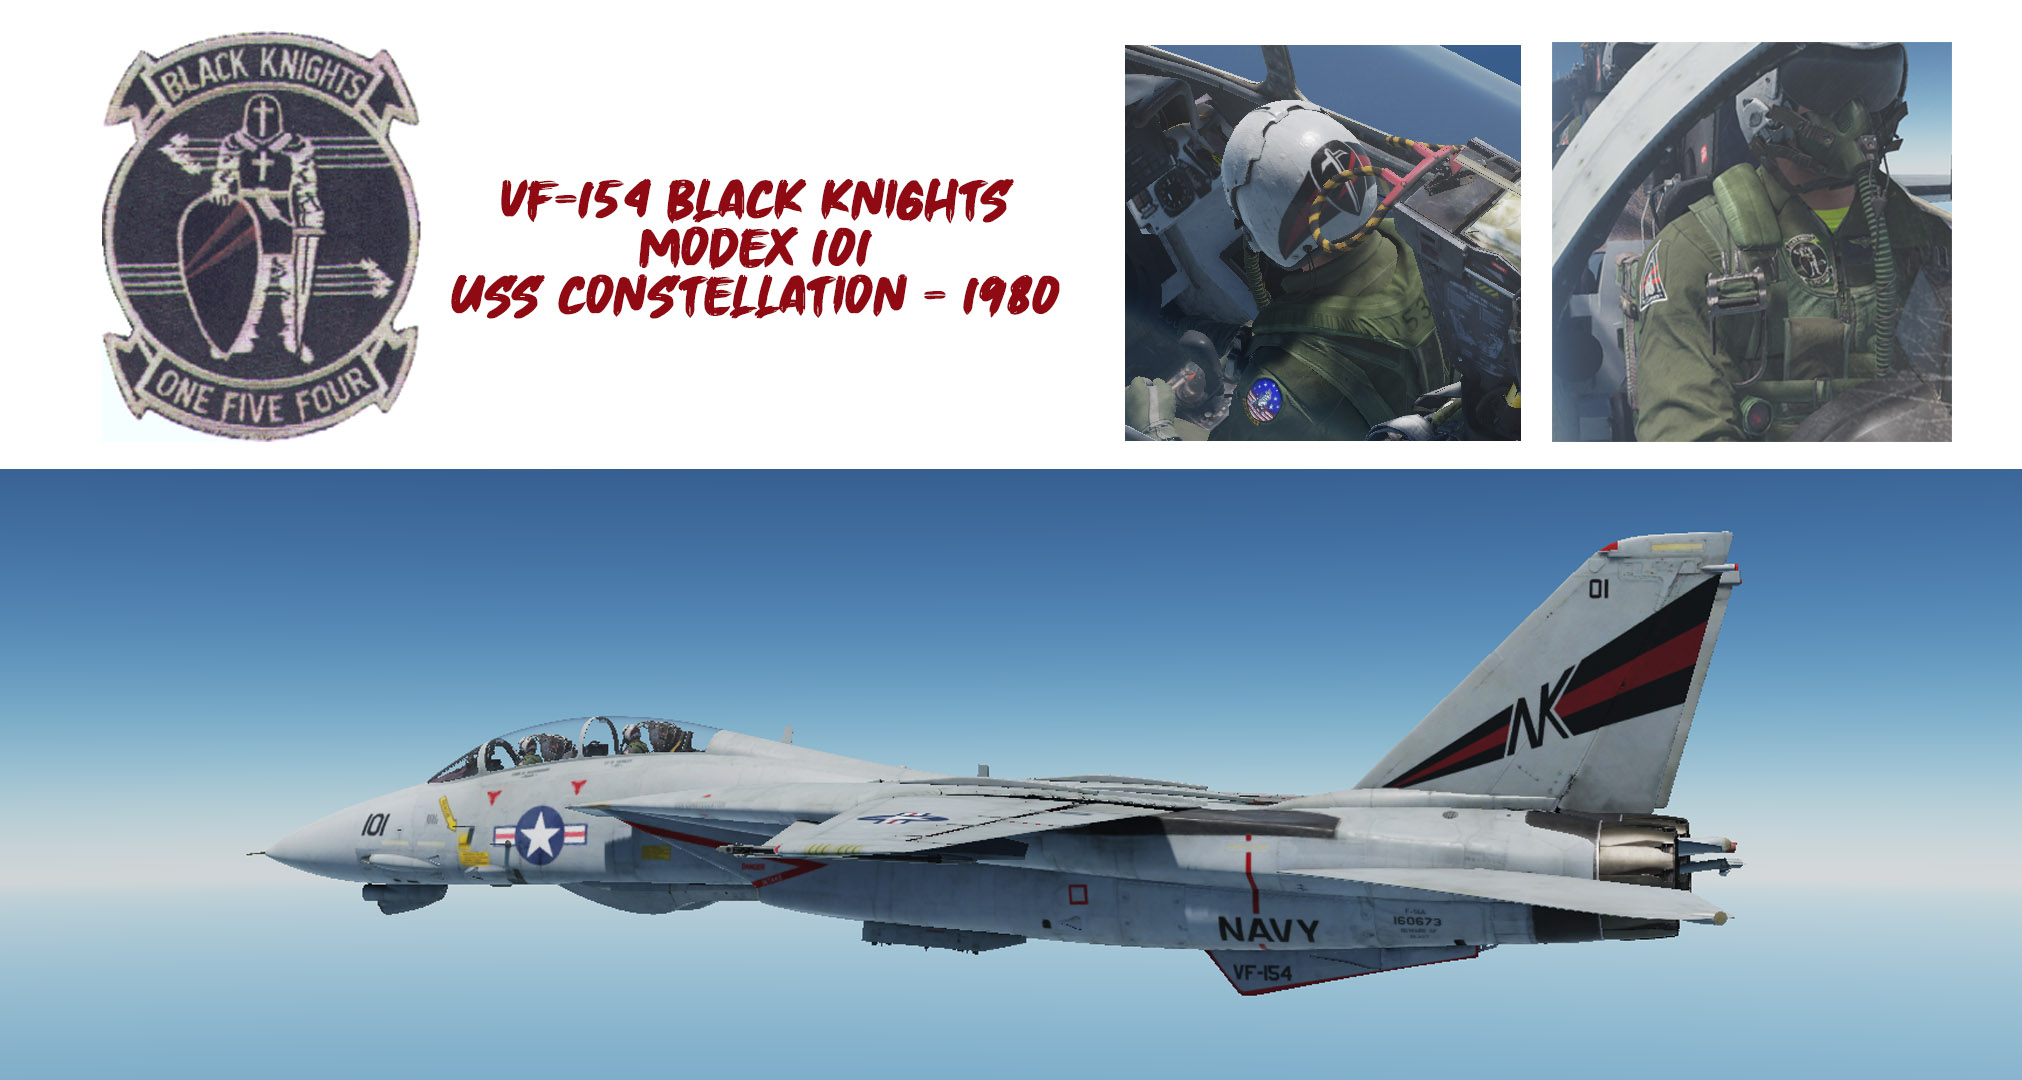 VF-154 Black Knights